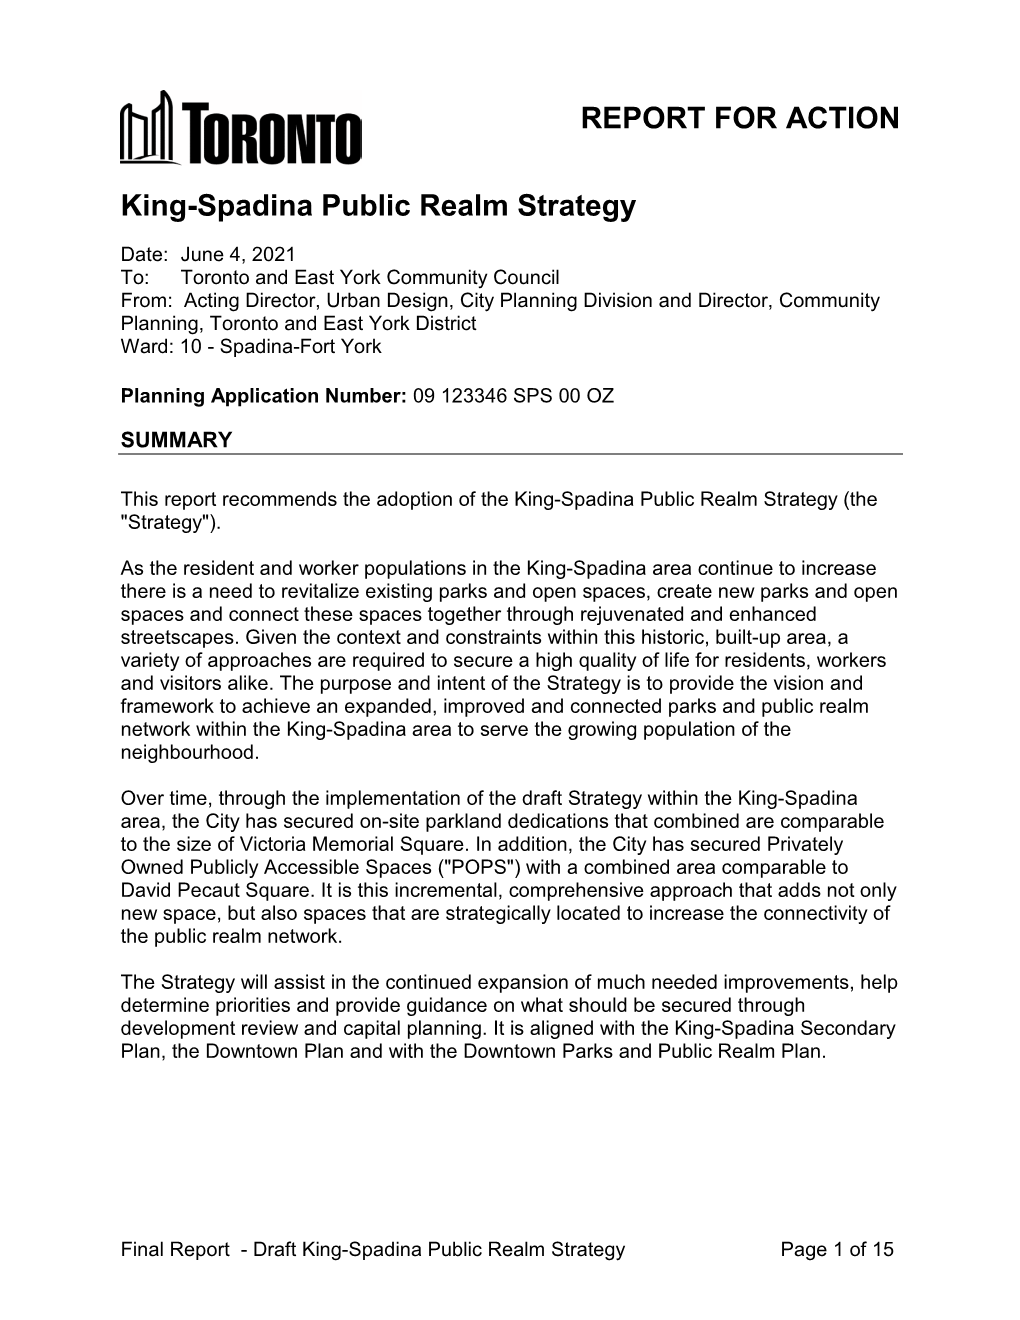 King-Spadina Public Realm Strategy